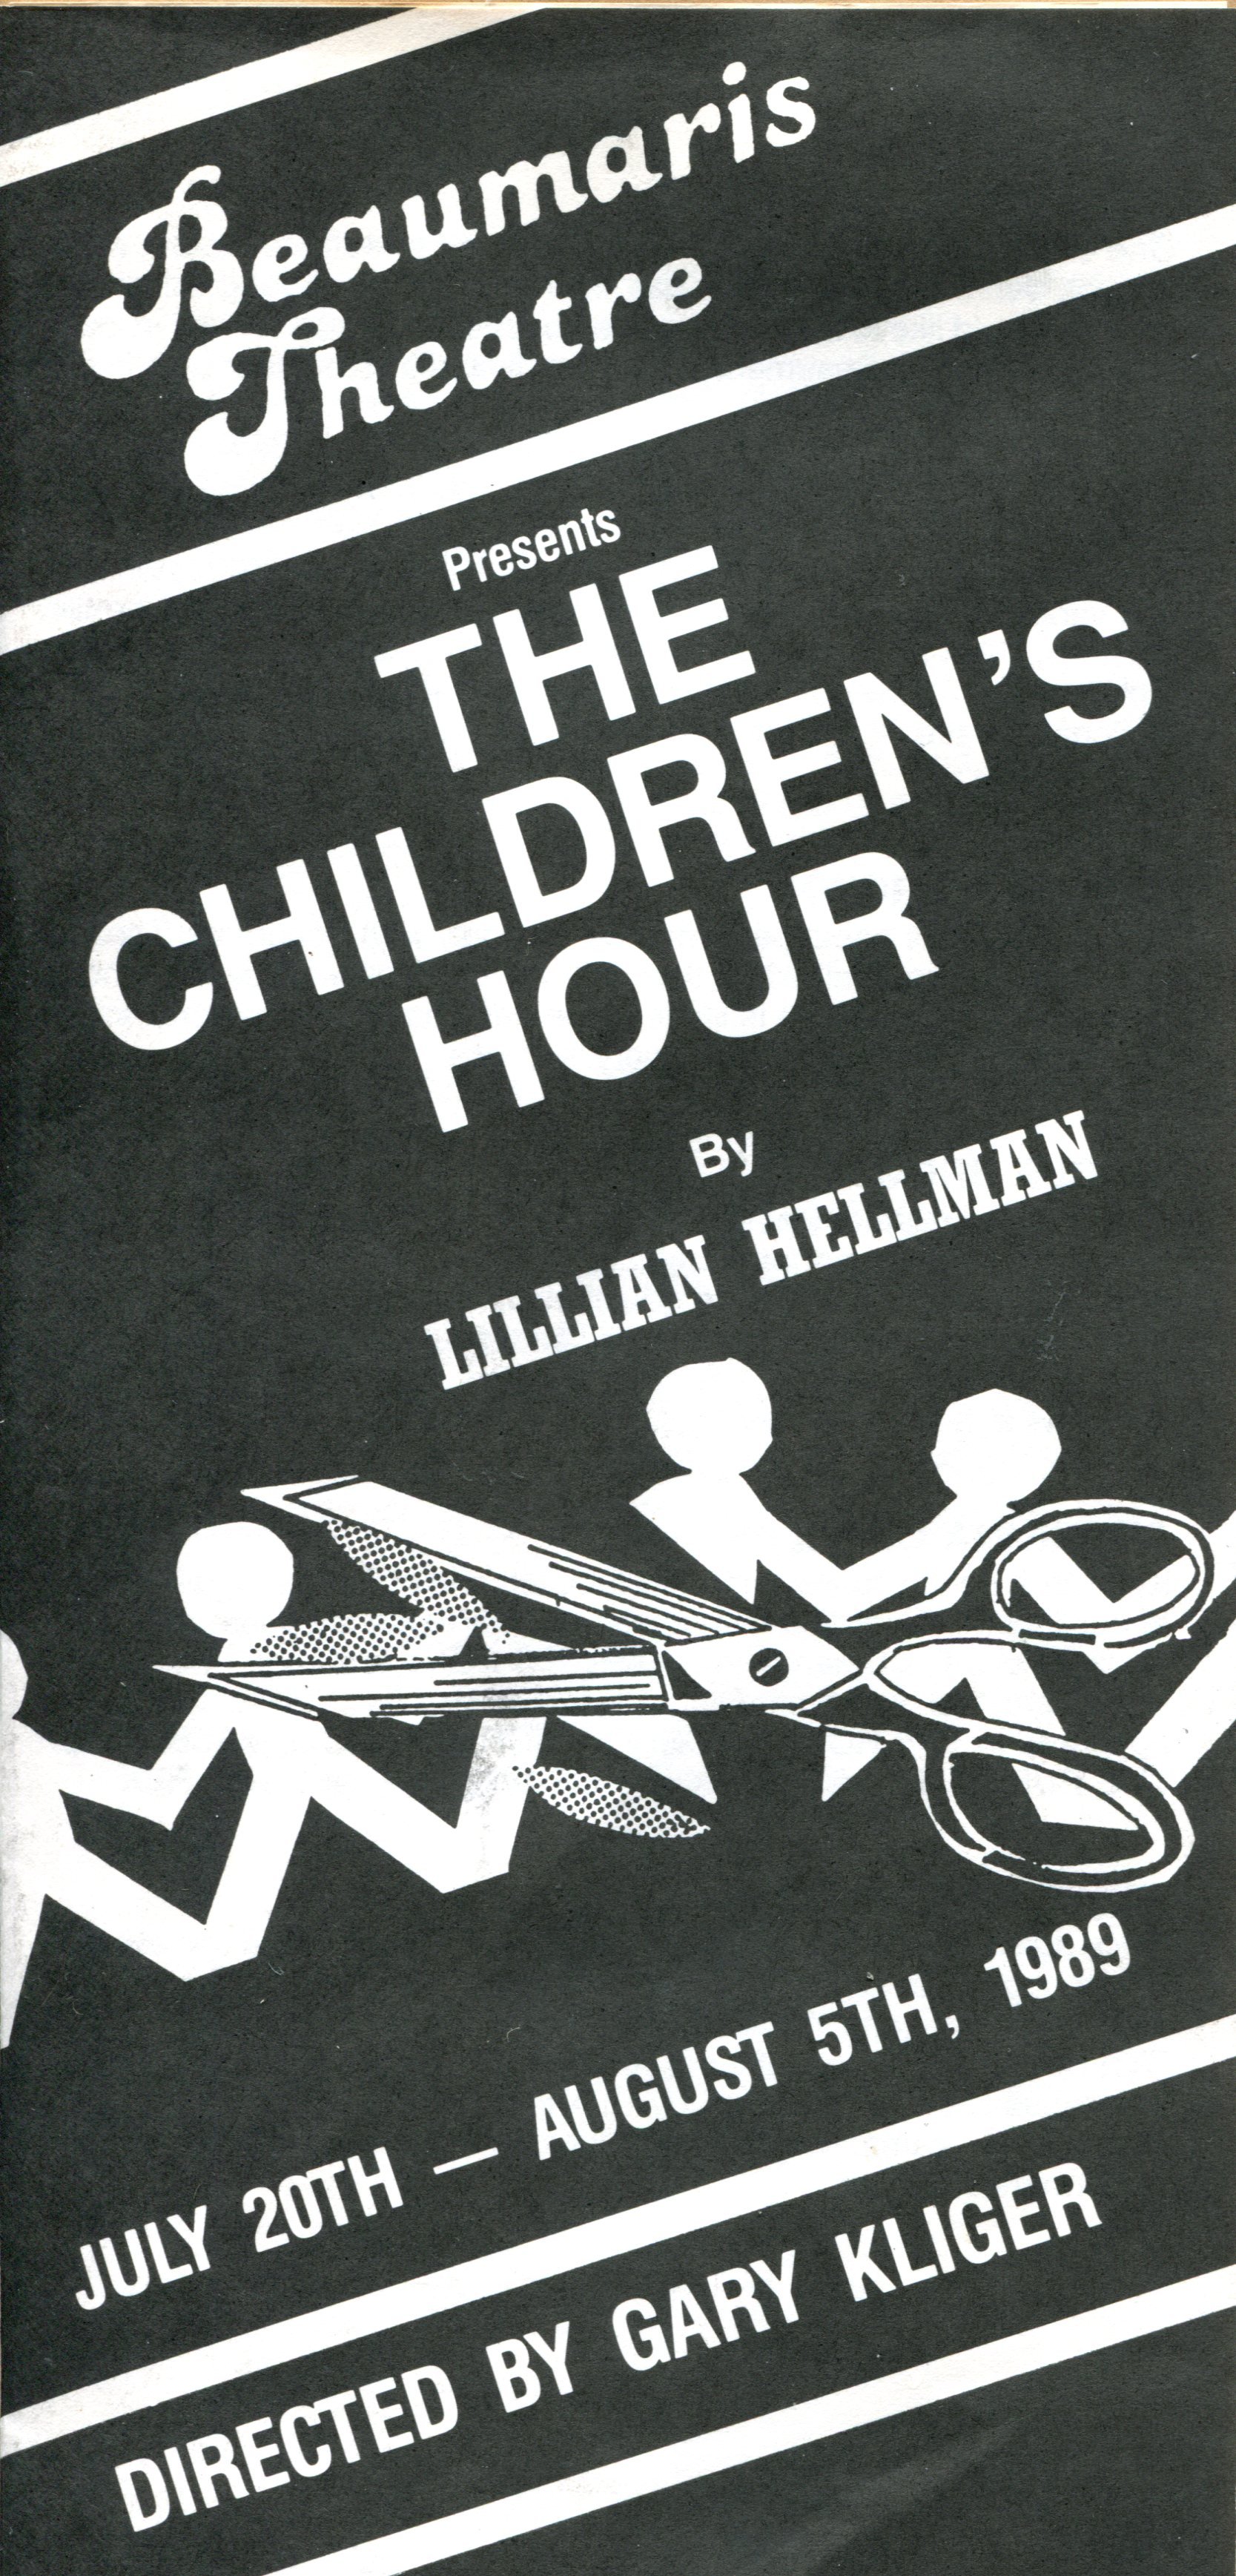 1989 the childrens hour pamplett.jpg